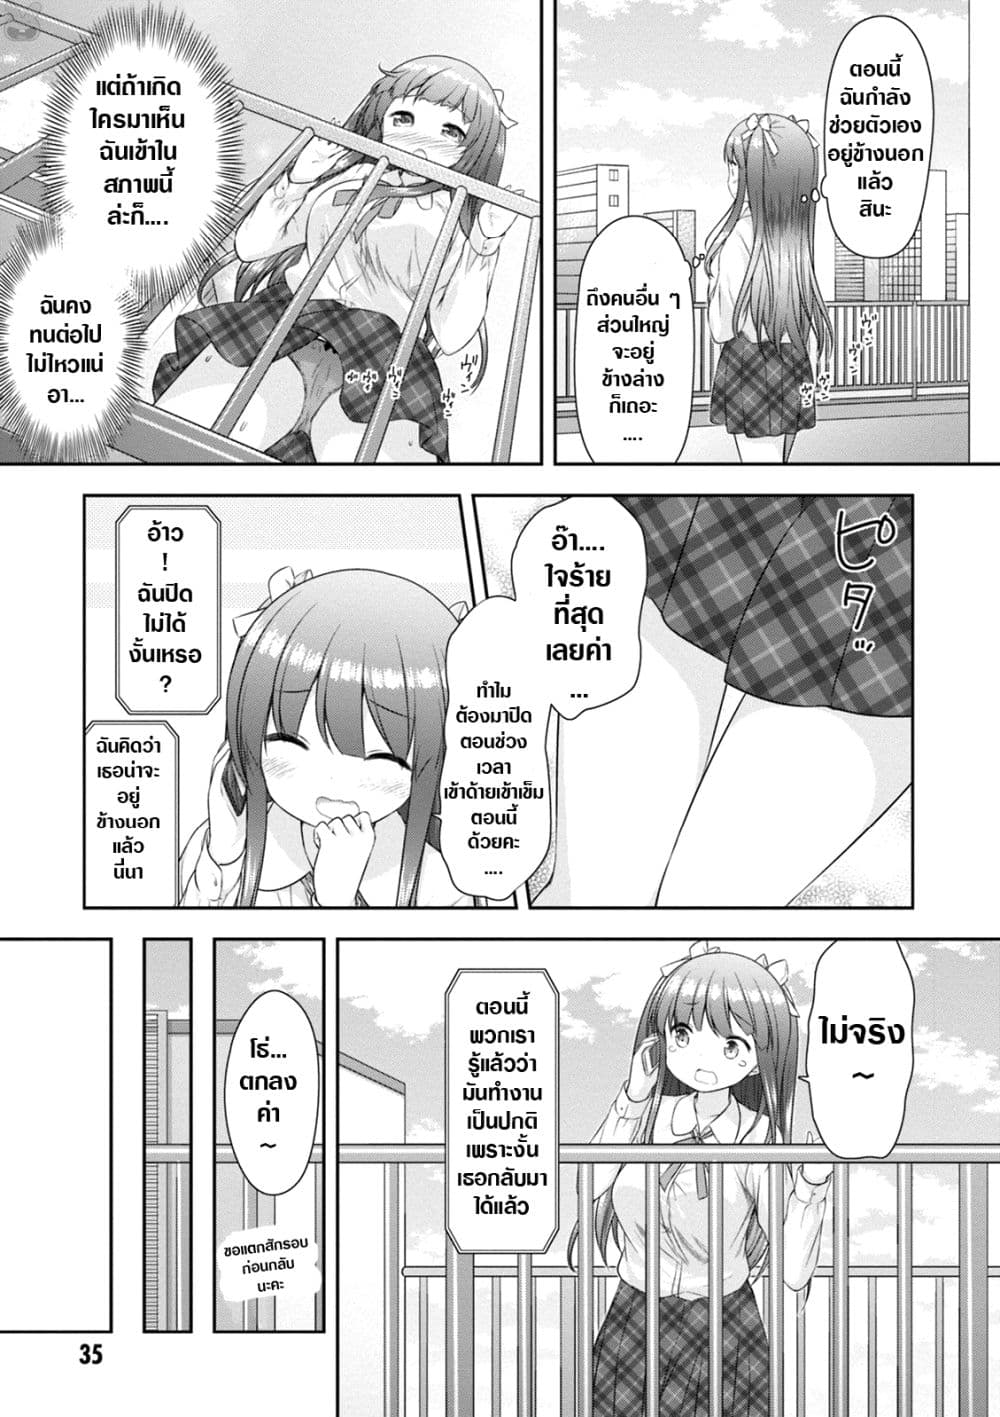 A Girl Meets Sex Toys Akane Oguri Indulge In Onanism2 (15)